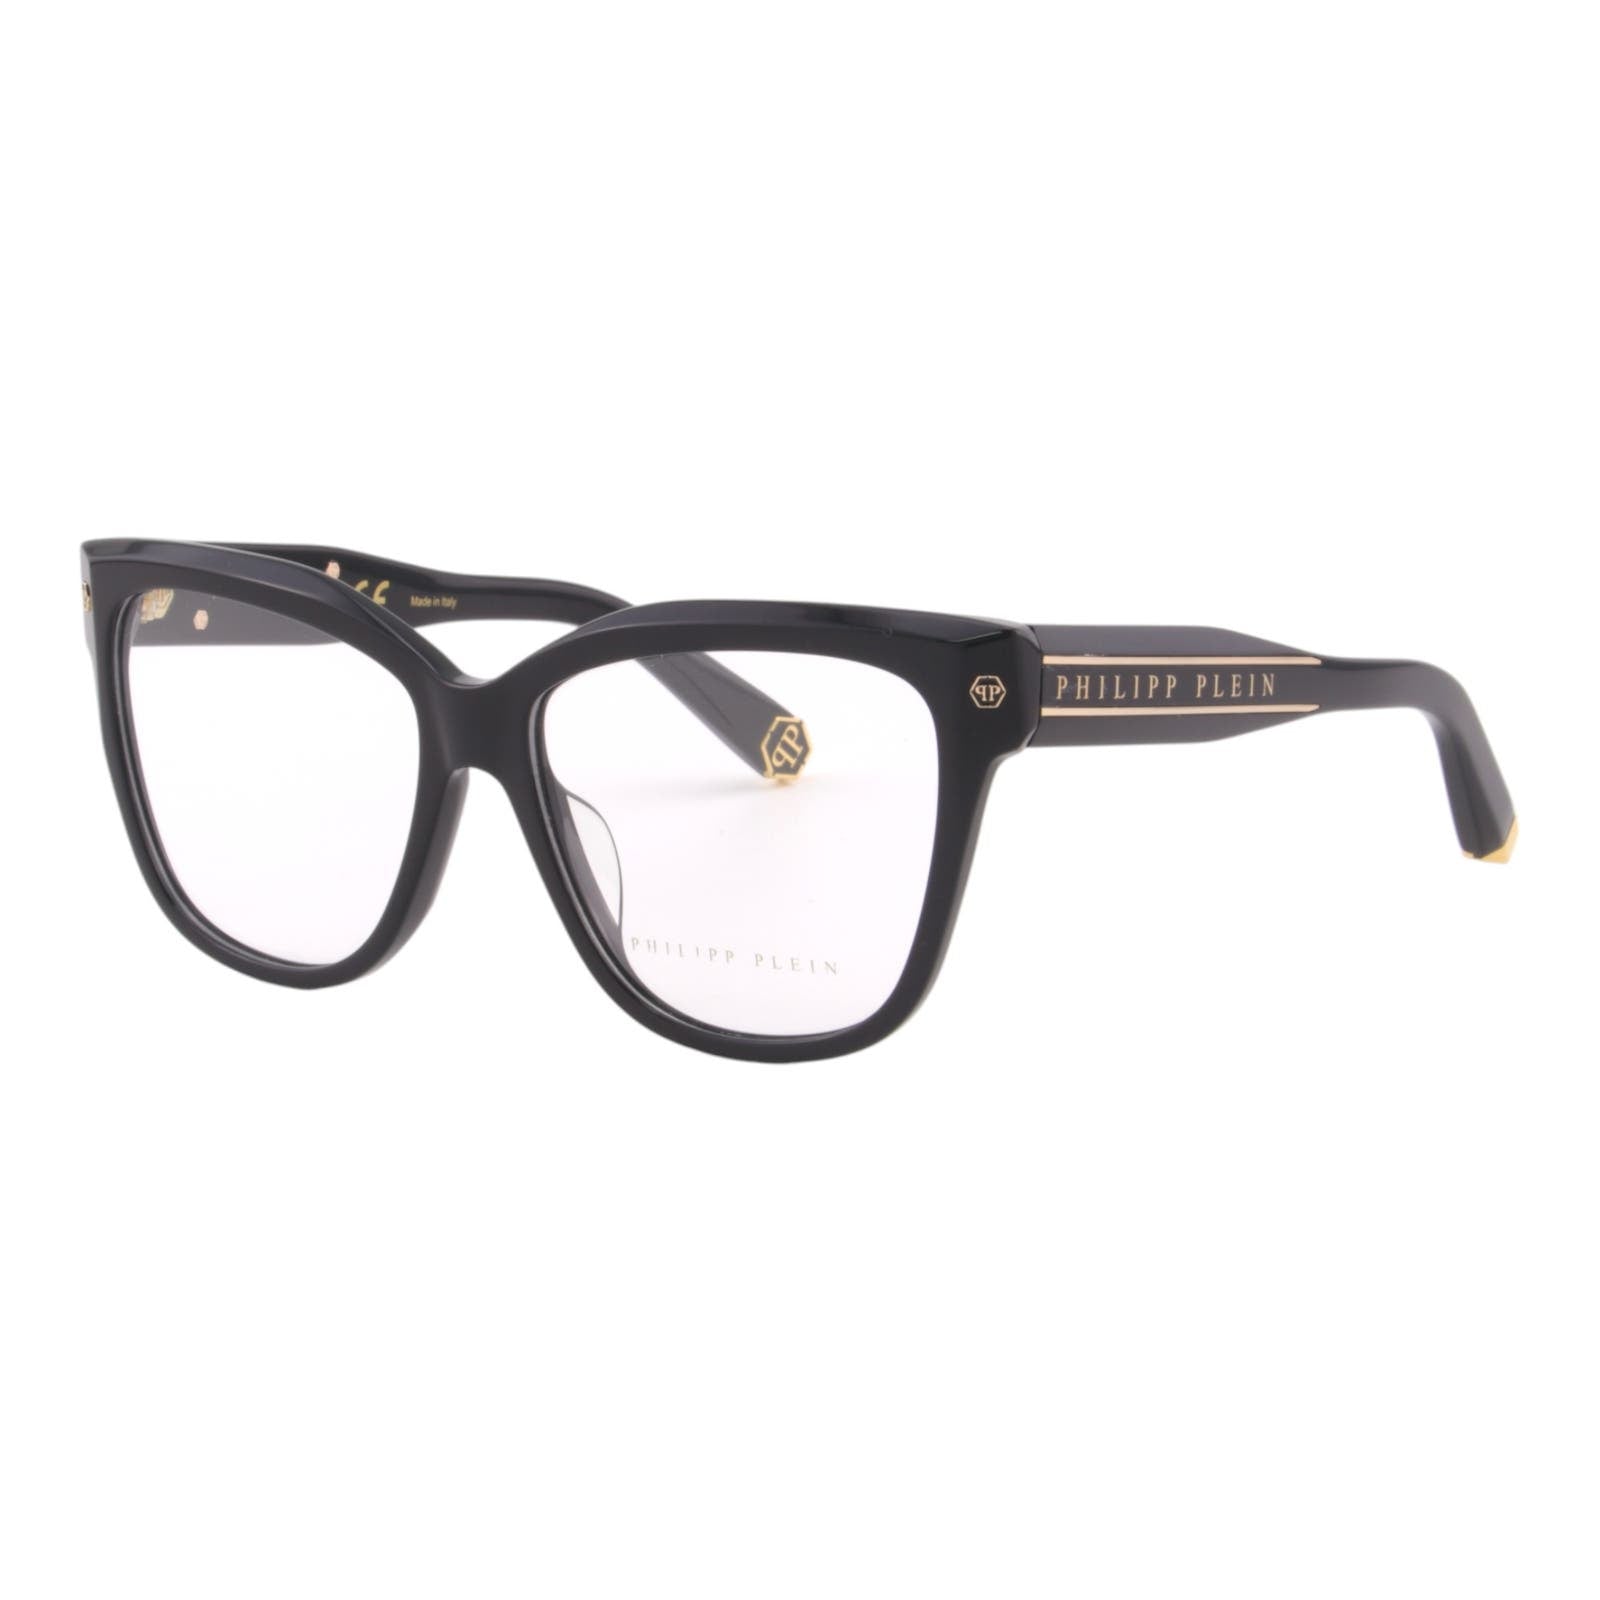 Women Cat Eye Glasses VPP051M-0700 Black Acetate Optical Frame